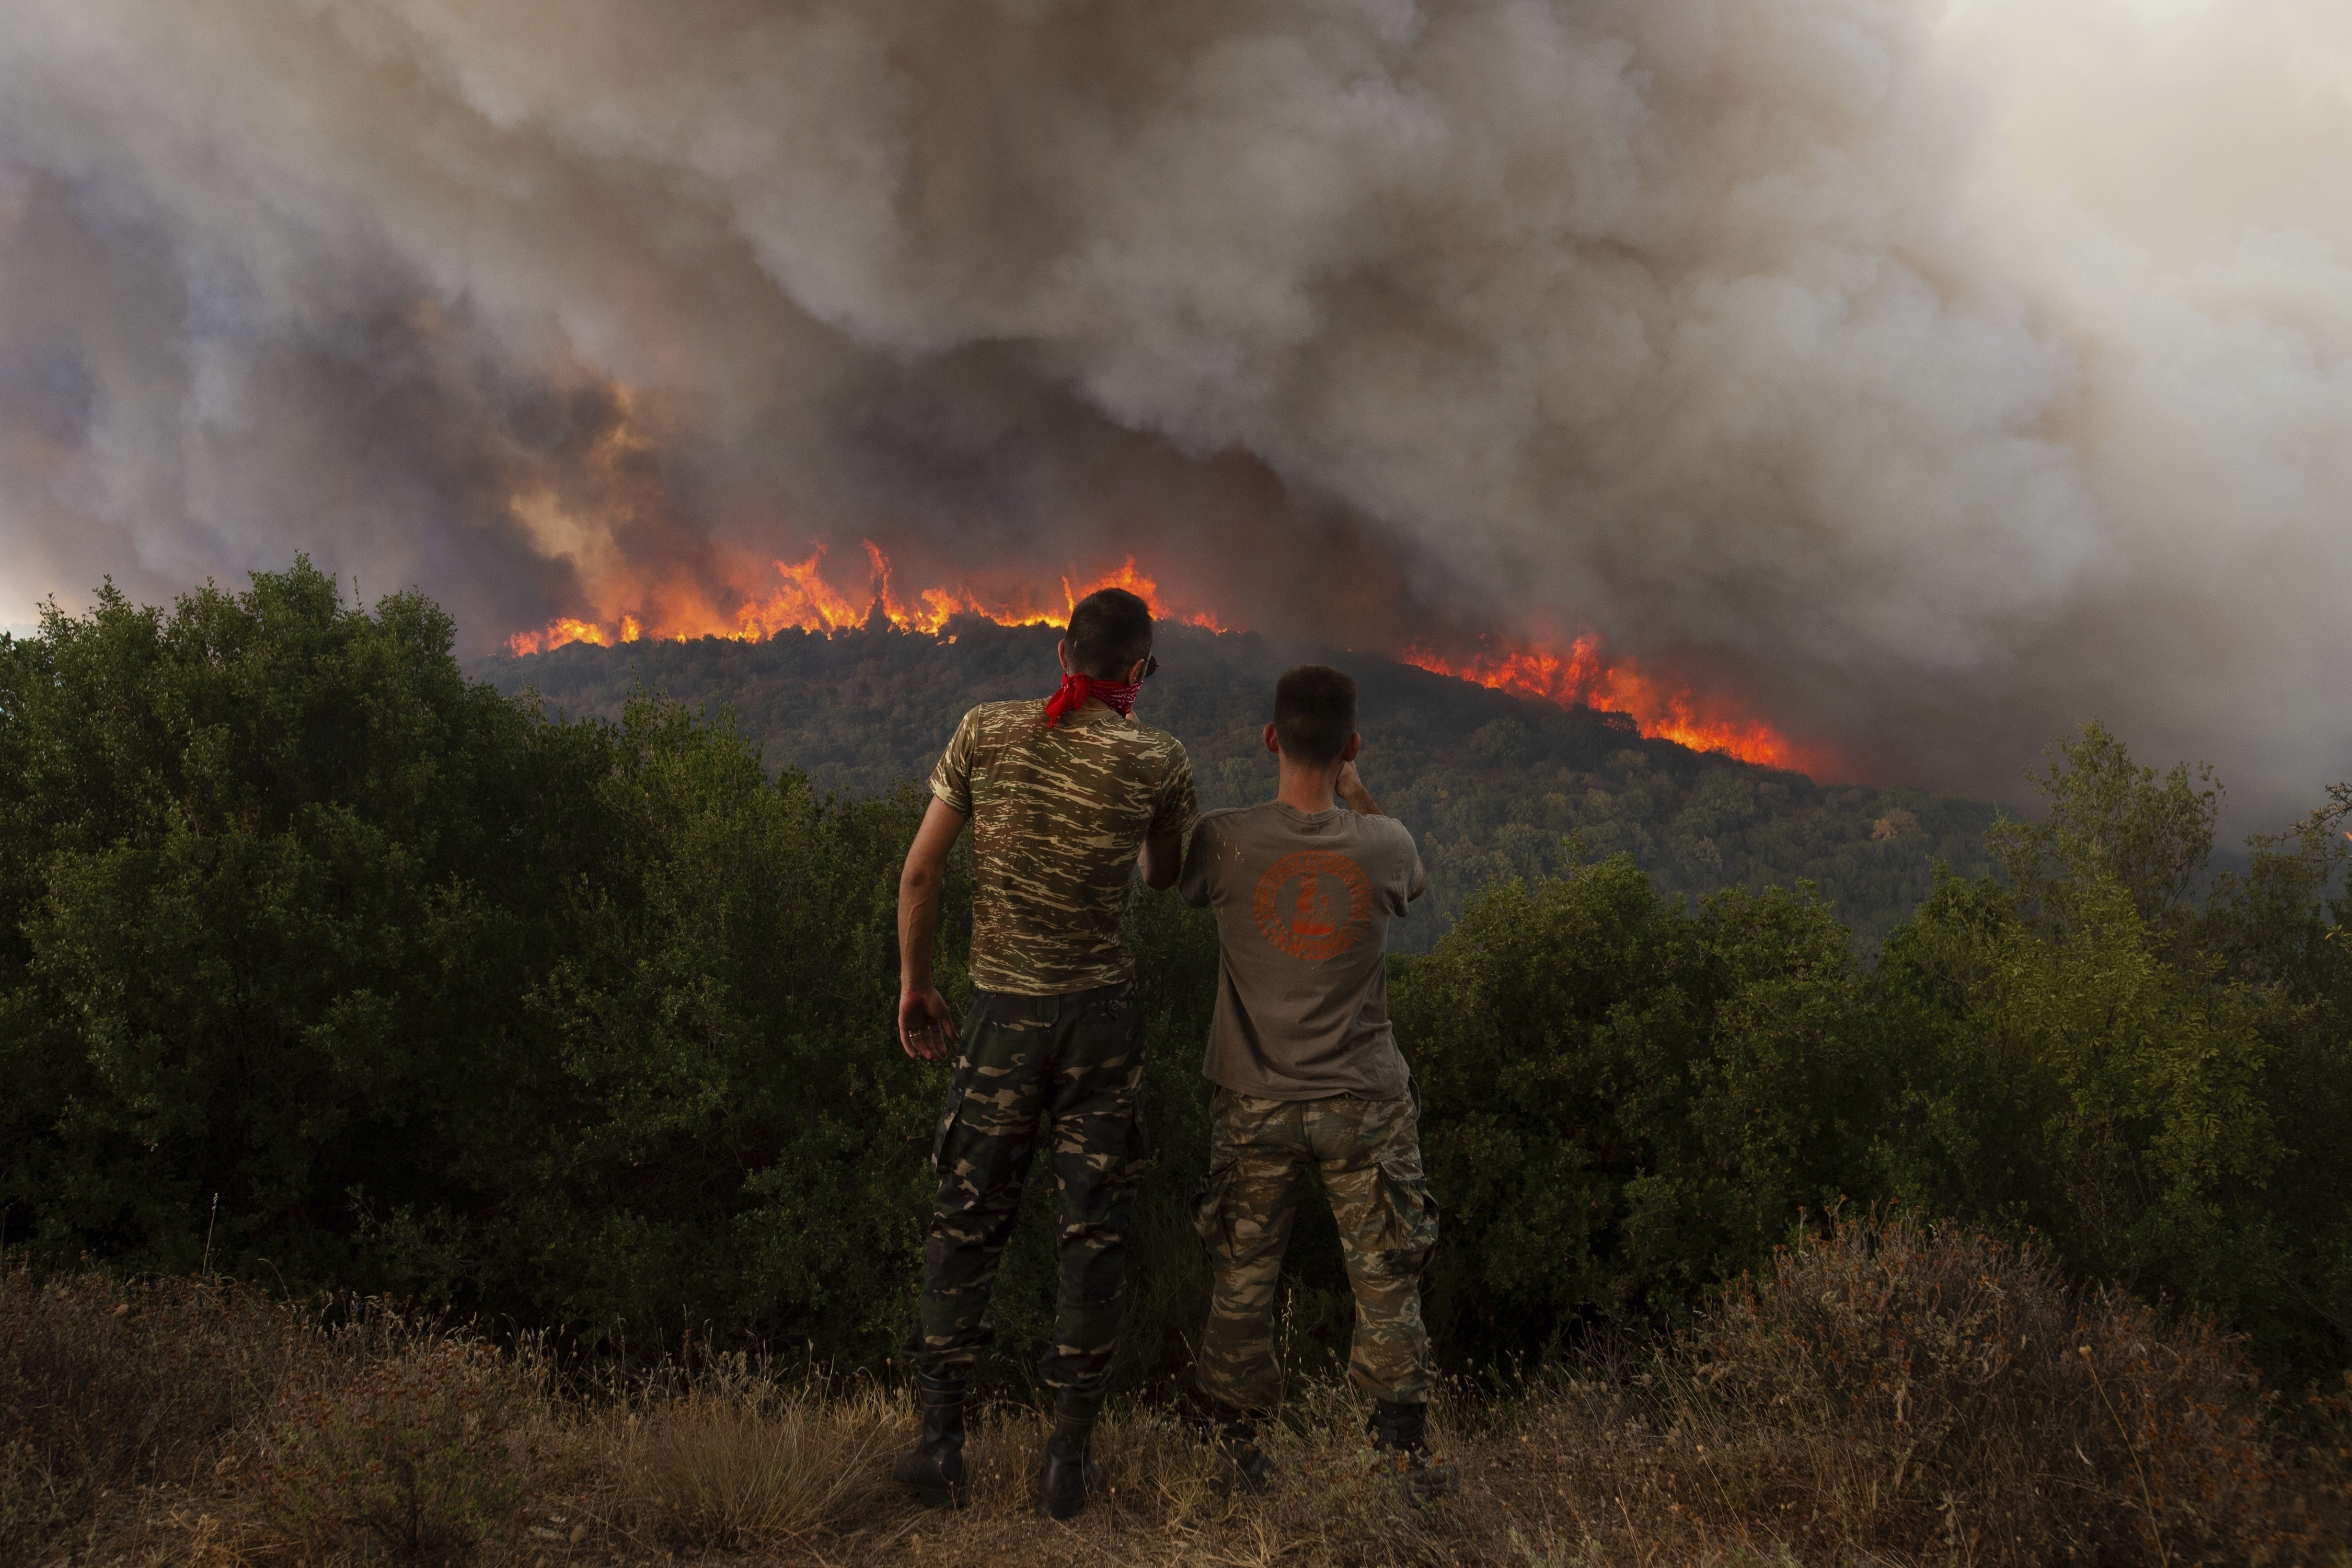 그리스 동북부에서 발생한 산불이 열흘 넘게 이어지고 있다. (사진 출처: AP)